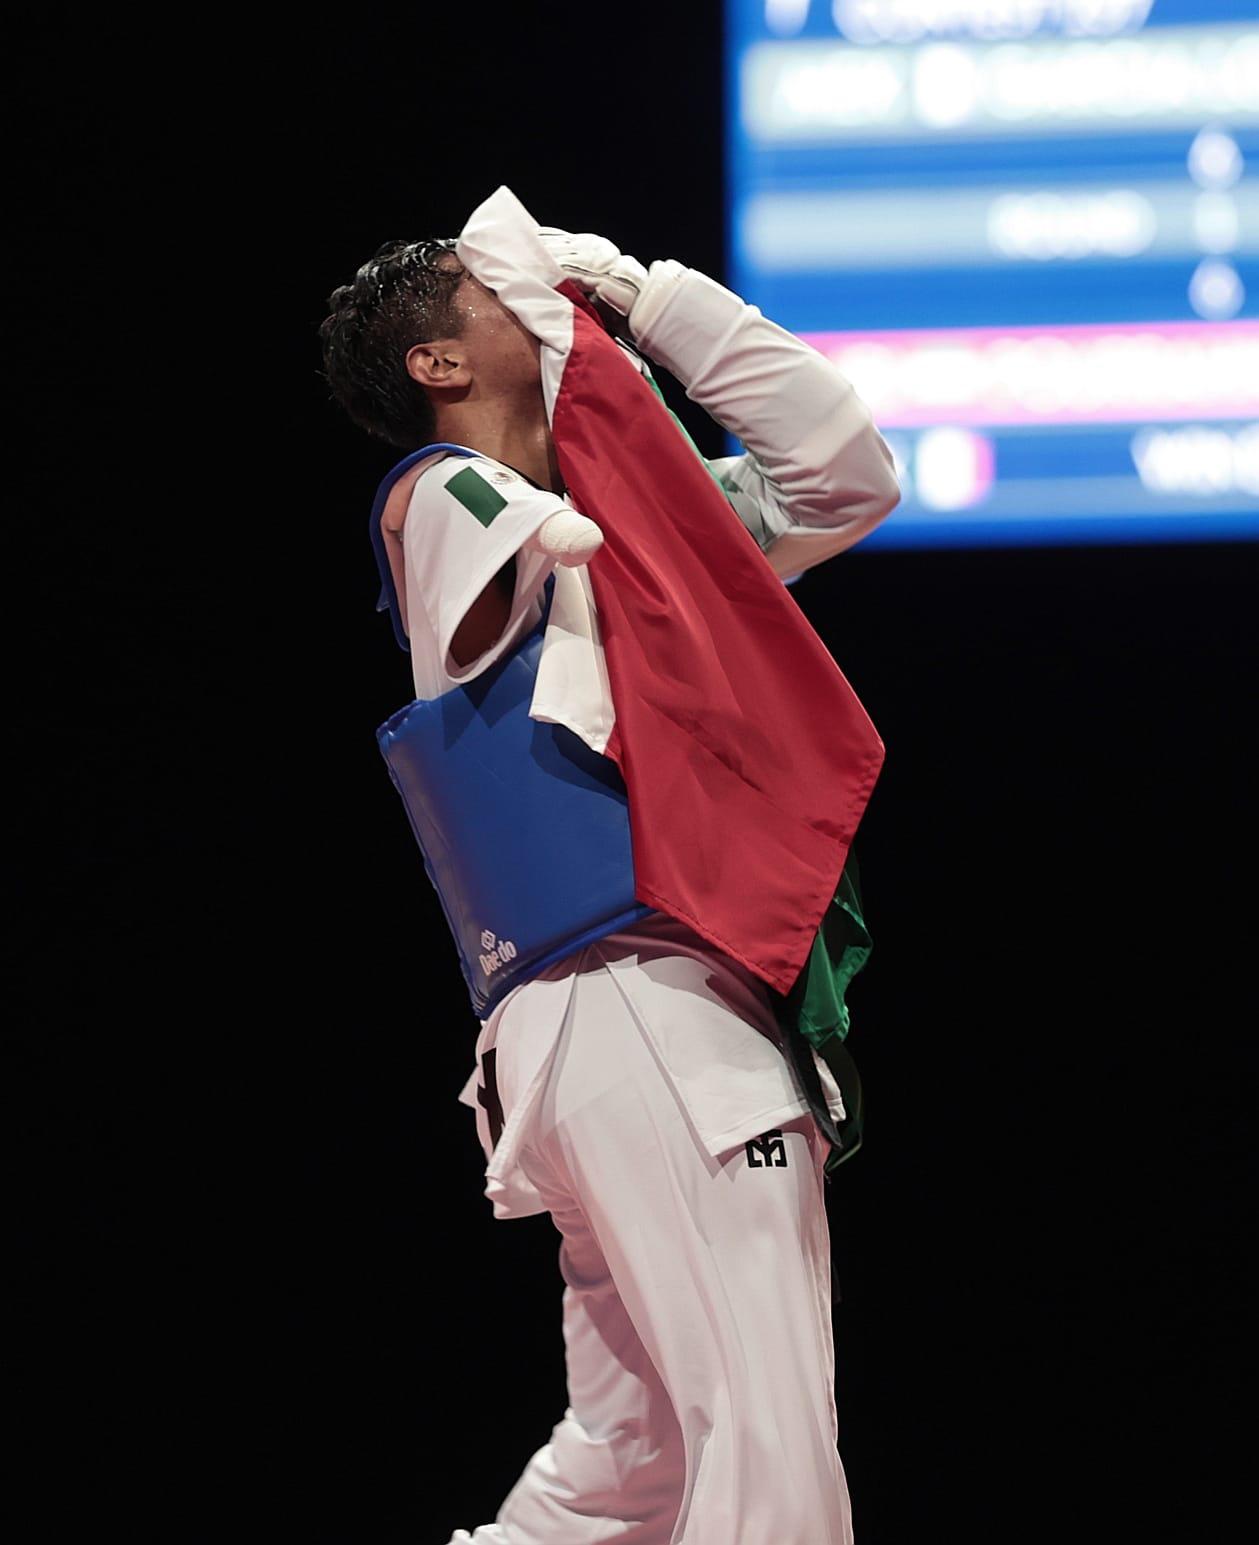 $!¡Juan Diego García es de oro! El sinaloense conquista el título del taekwondo en su debut en los Paralímpicos